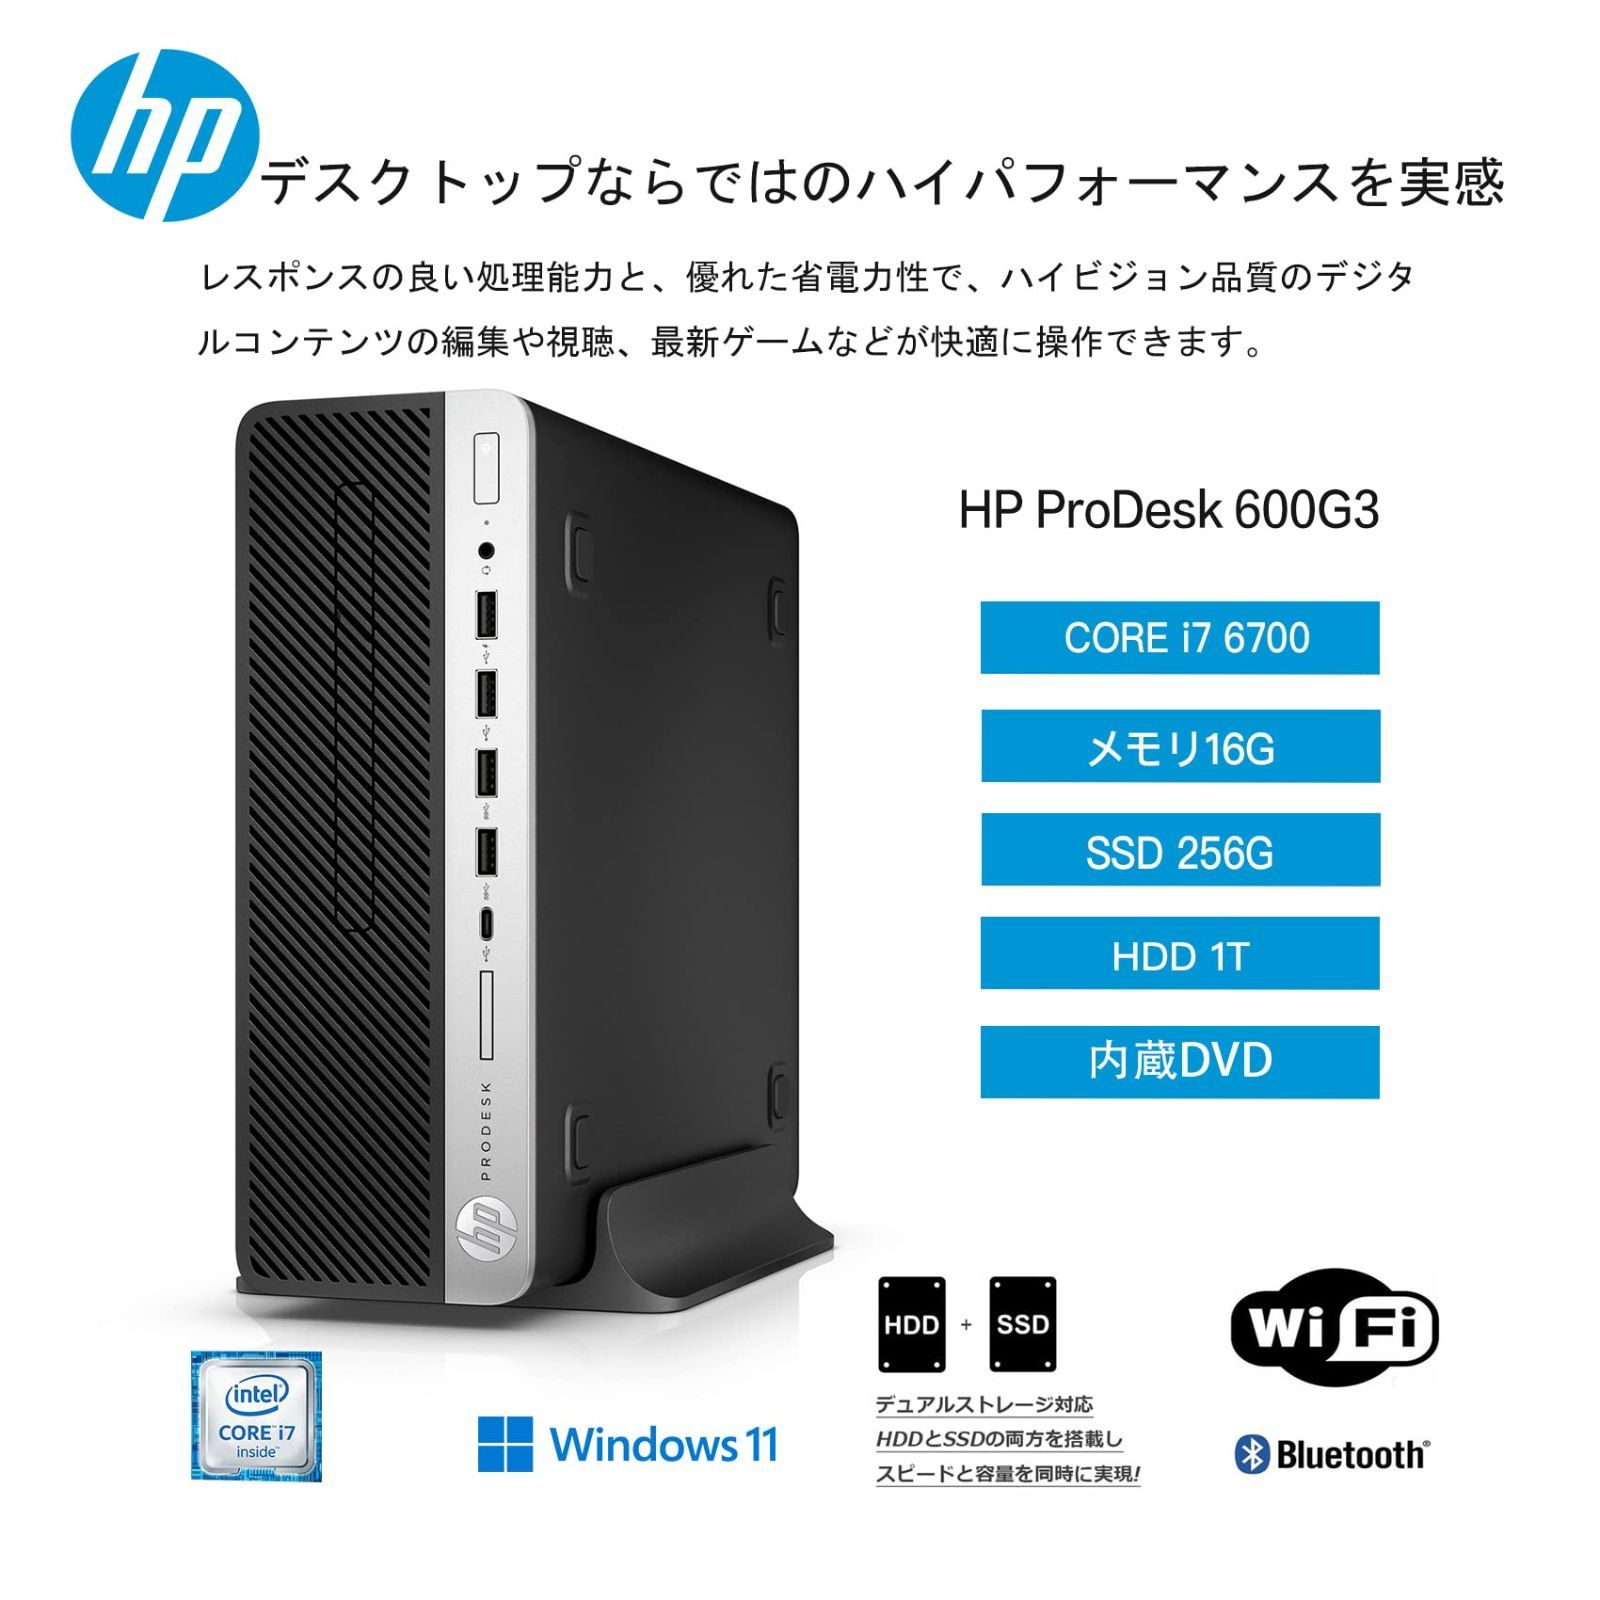 特価セール】i7-6700/メモリ16GB/M.2 Core SSD256GB+HDD 1TB/Windows